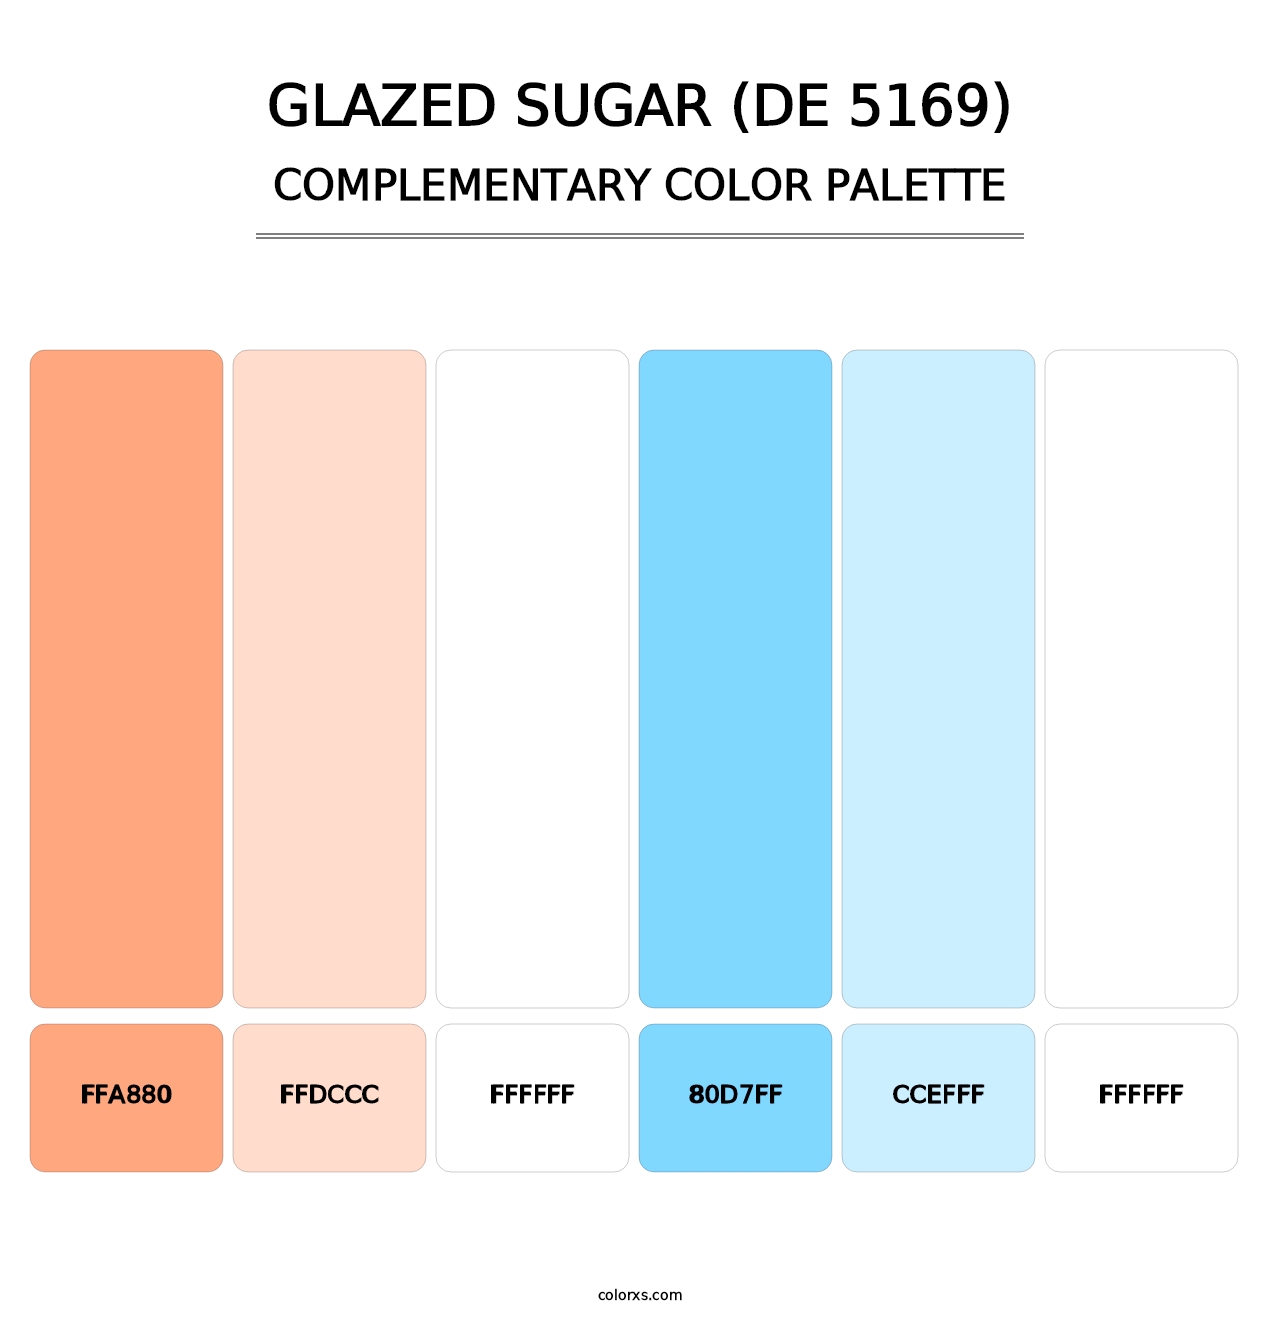 Glazed Sugar (DE 5169) - Complementary Color Palette